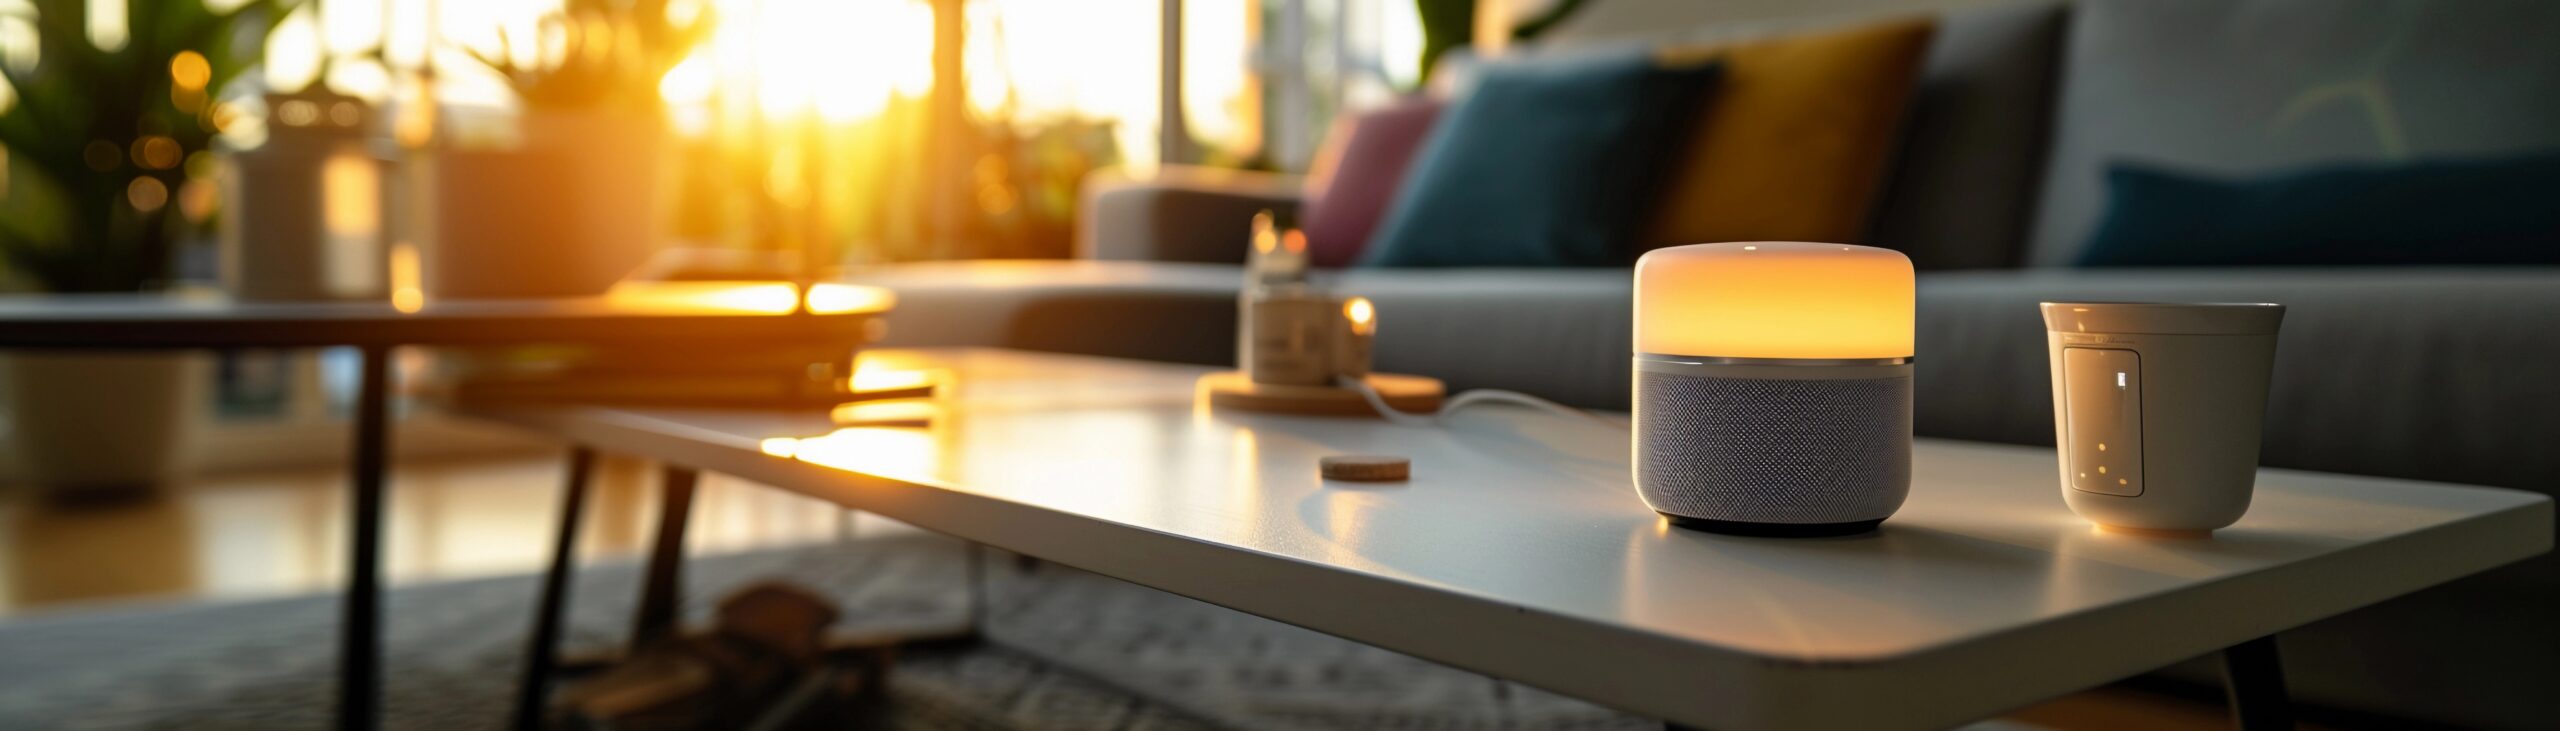 www.appr.com : Is Amazon Echo A Smart Home Hub?